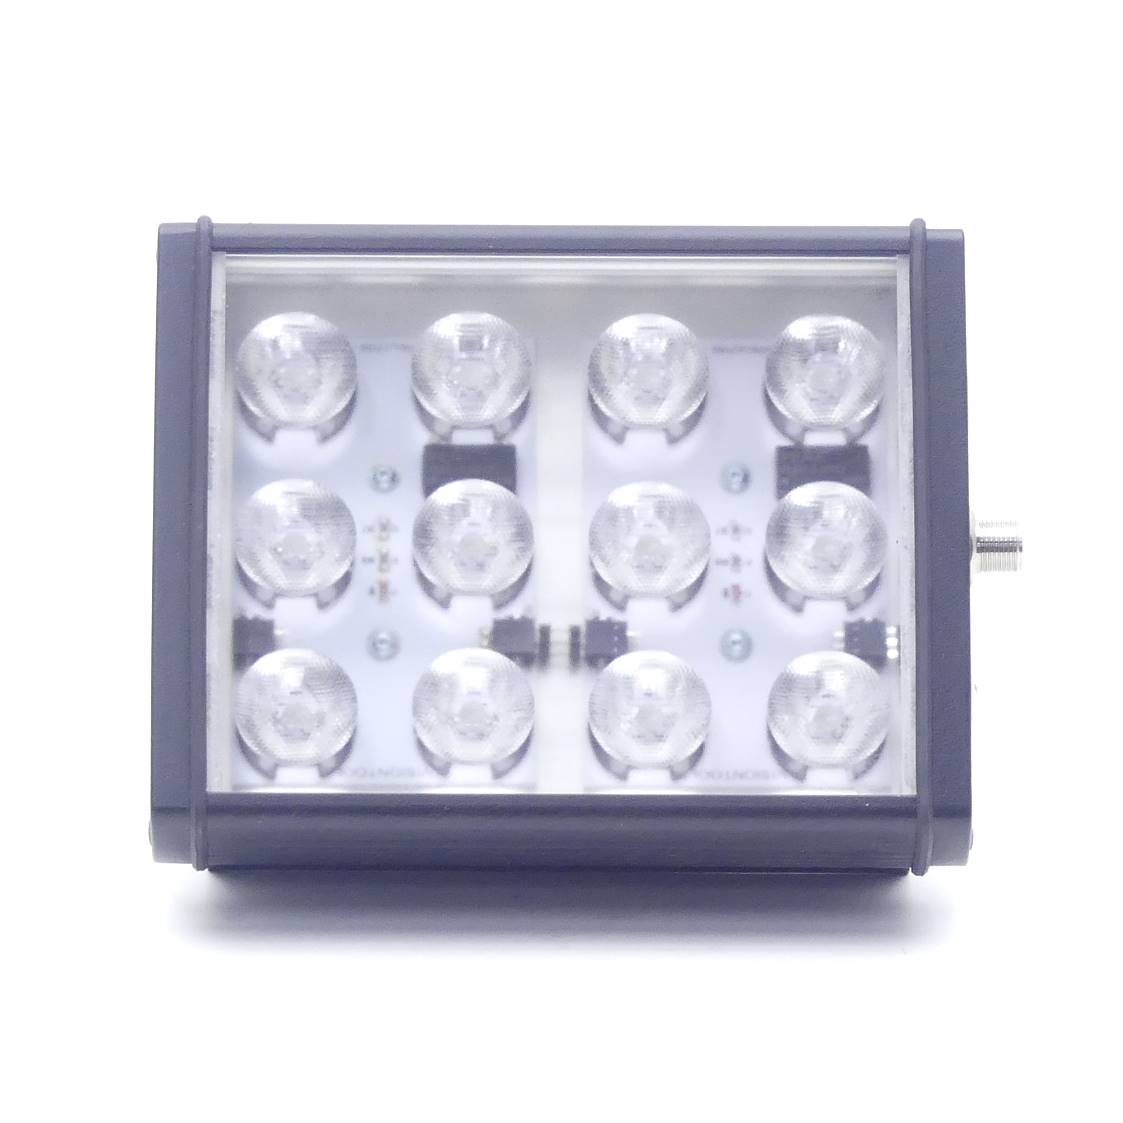 MDL150 LED-Module light 